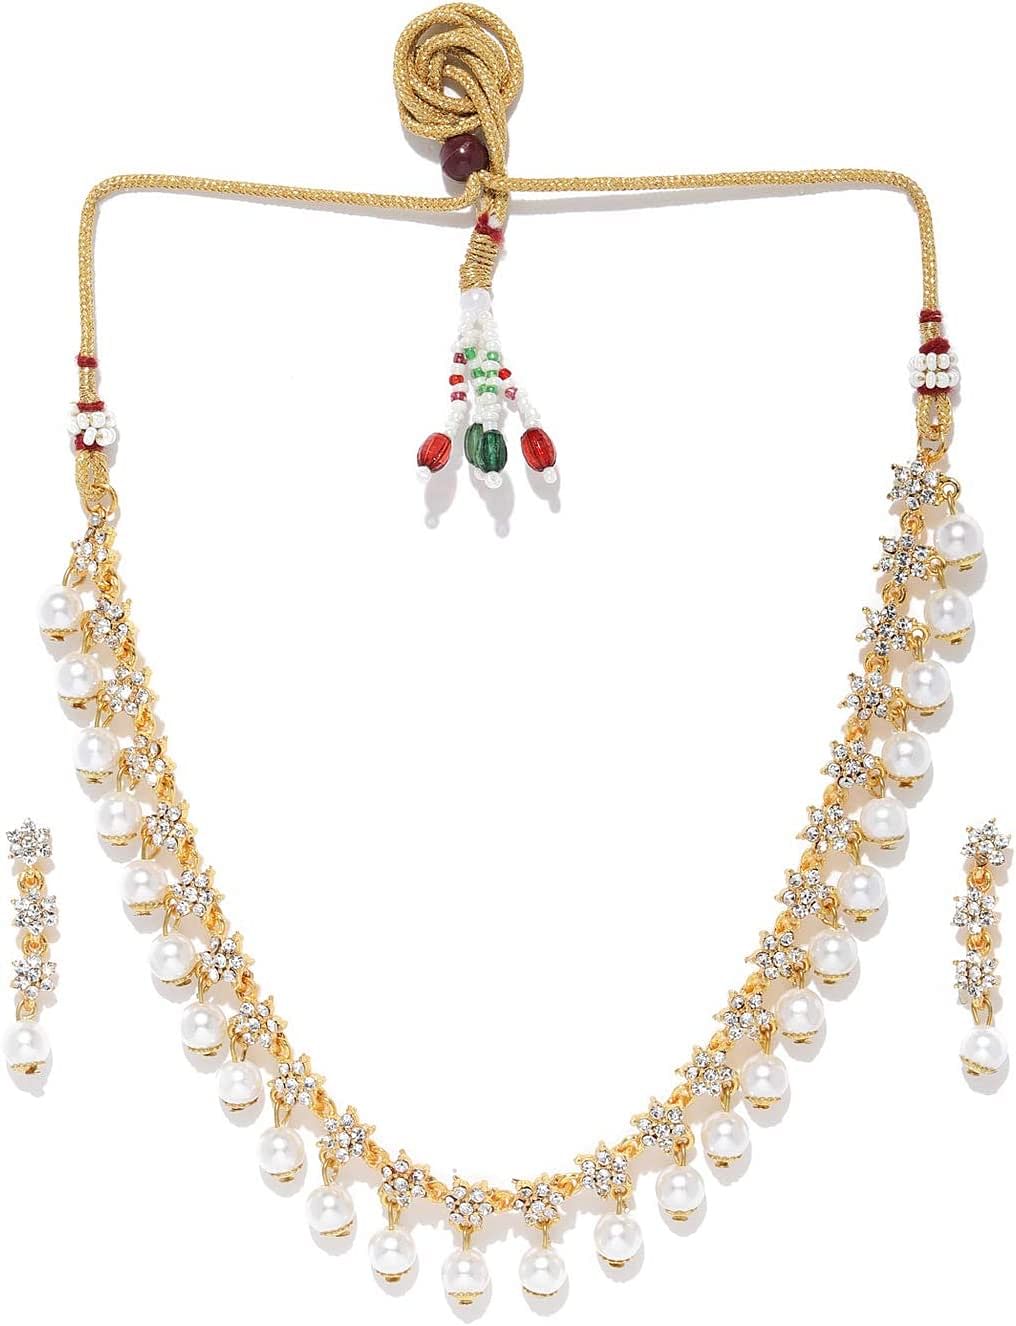 طقم مجوهرات للنساء من زافيري بيرلز (لون ذهبي) (موديل ZPFK9067), معدن, الماس النمساوي واللؤلؤ